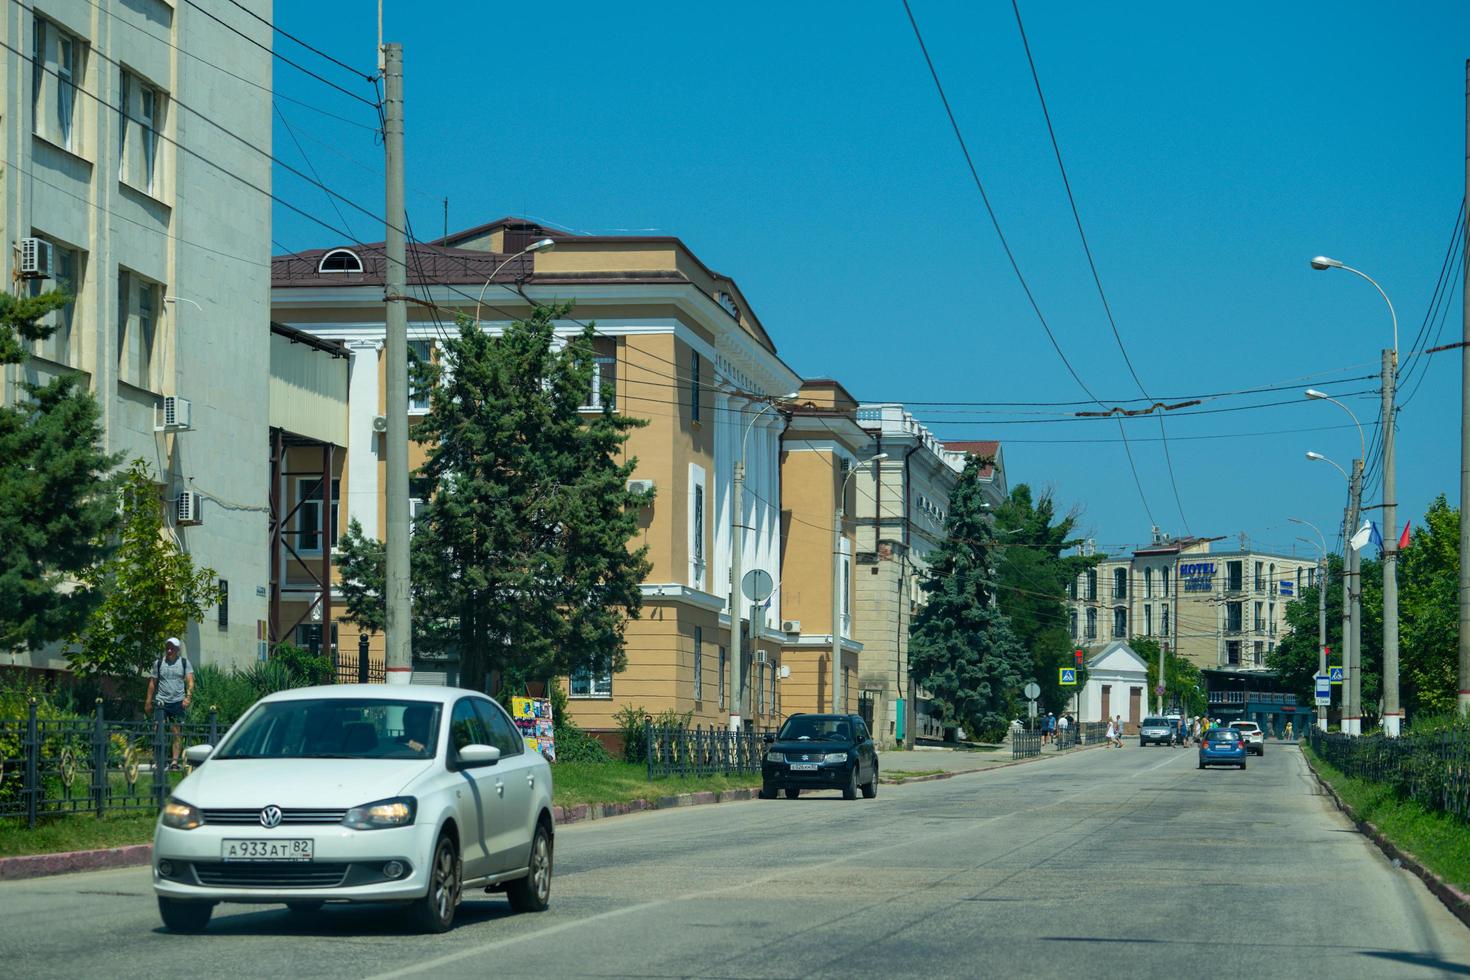 kertch, crimée - 31 juillet 2022 paysage urbain avec rues et transports. photo